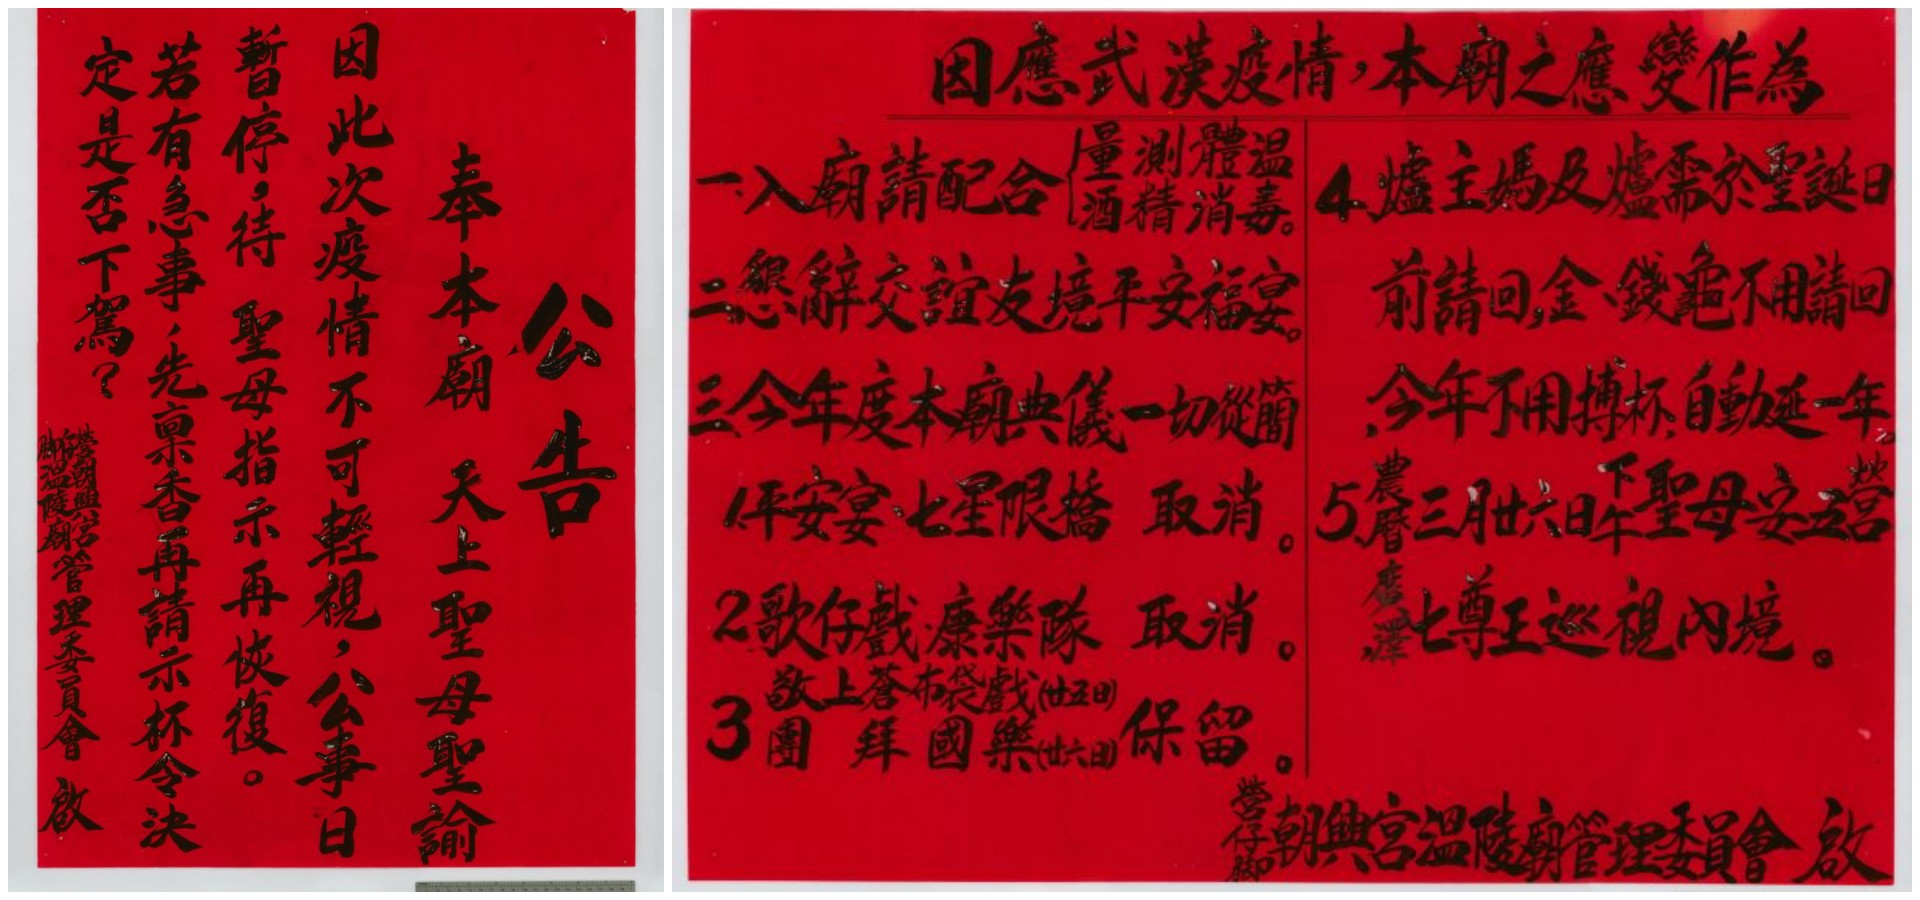 朝興宮溫陵廟提供的防疫公告